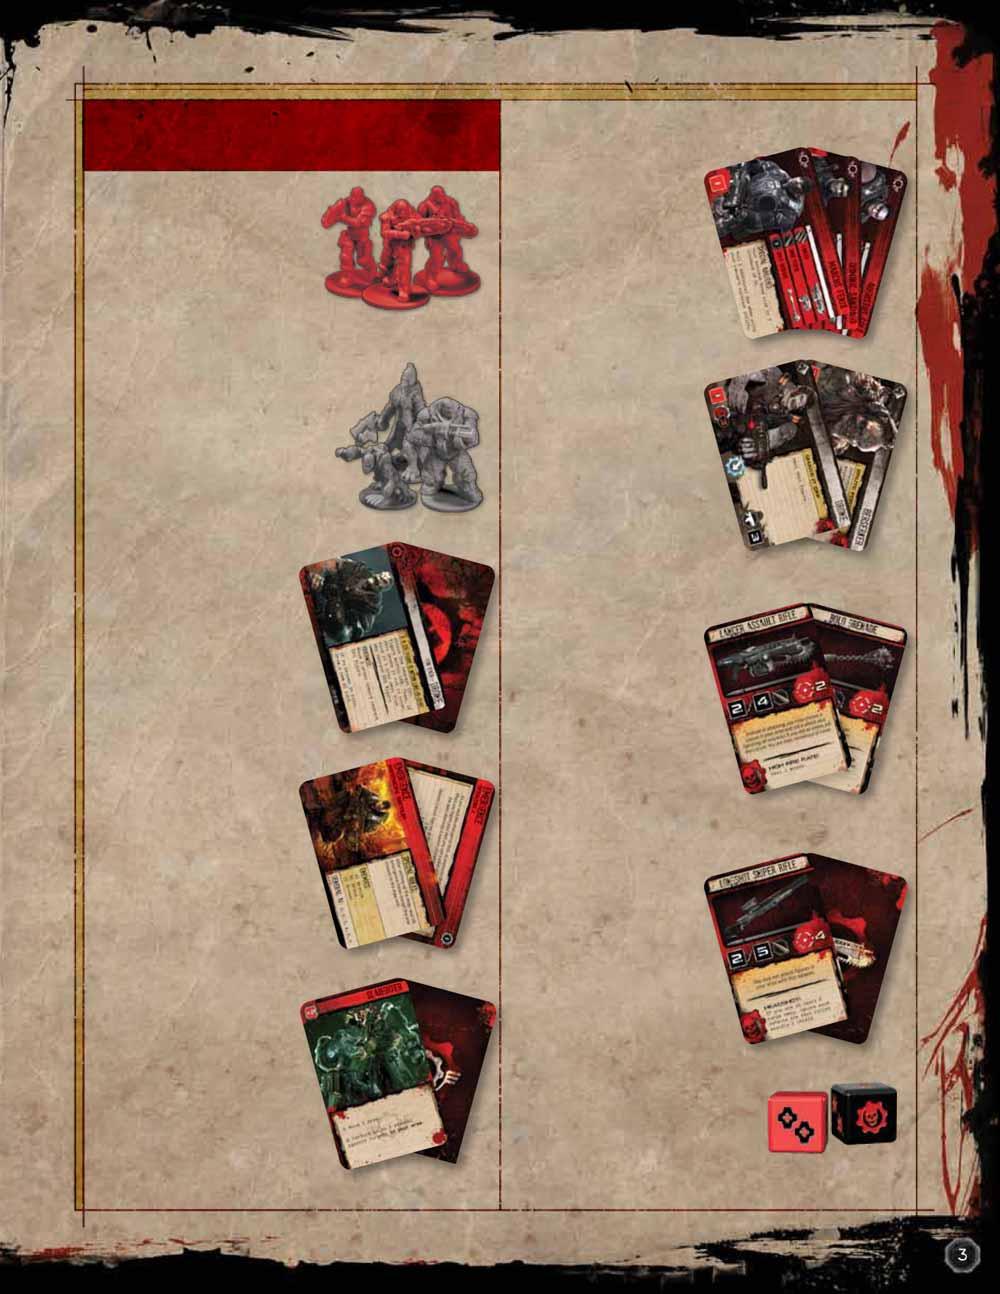 Tartozékok részletesen COG figurák E piros figurák jelképezik a játékosok által irányított karaktereket a Gears of Warban. Helyzetük a térképen az irányított karakter helyét jelöli.